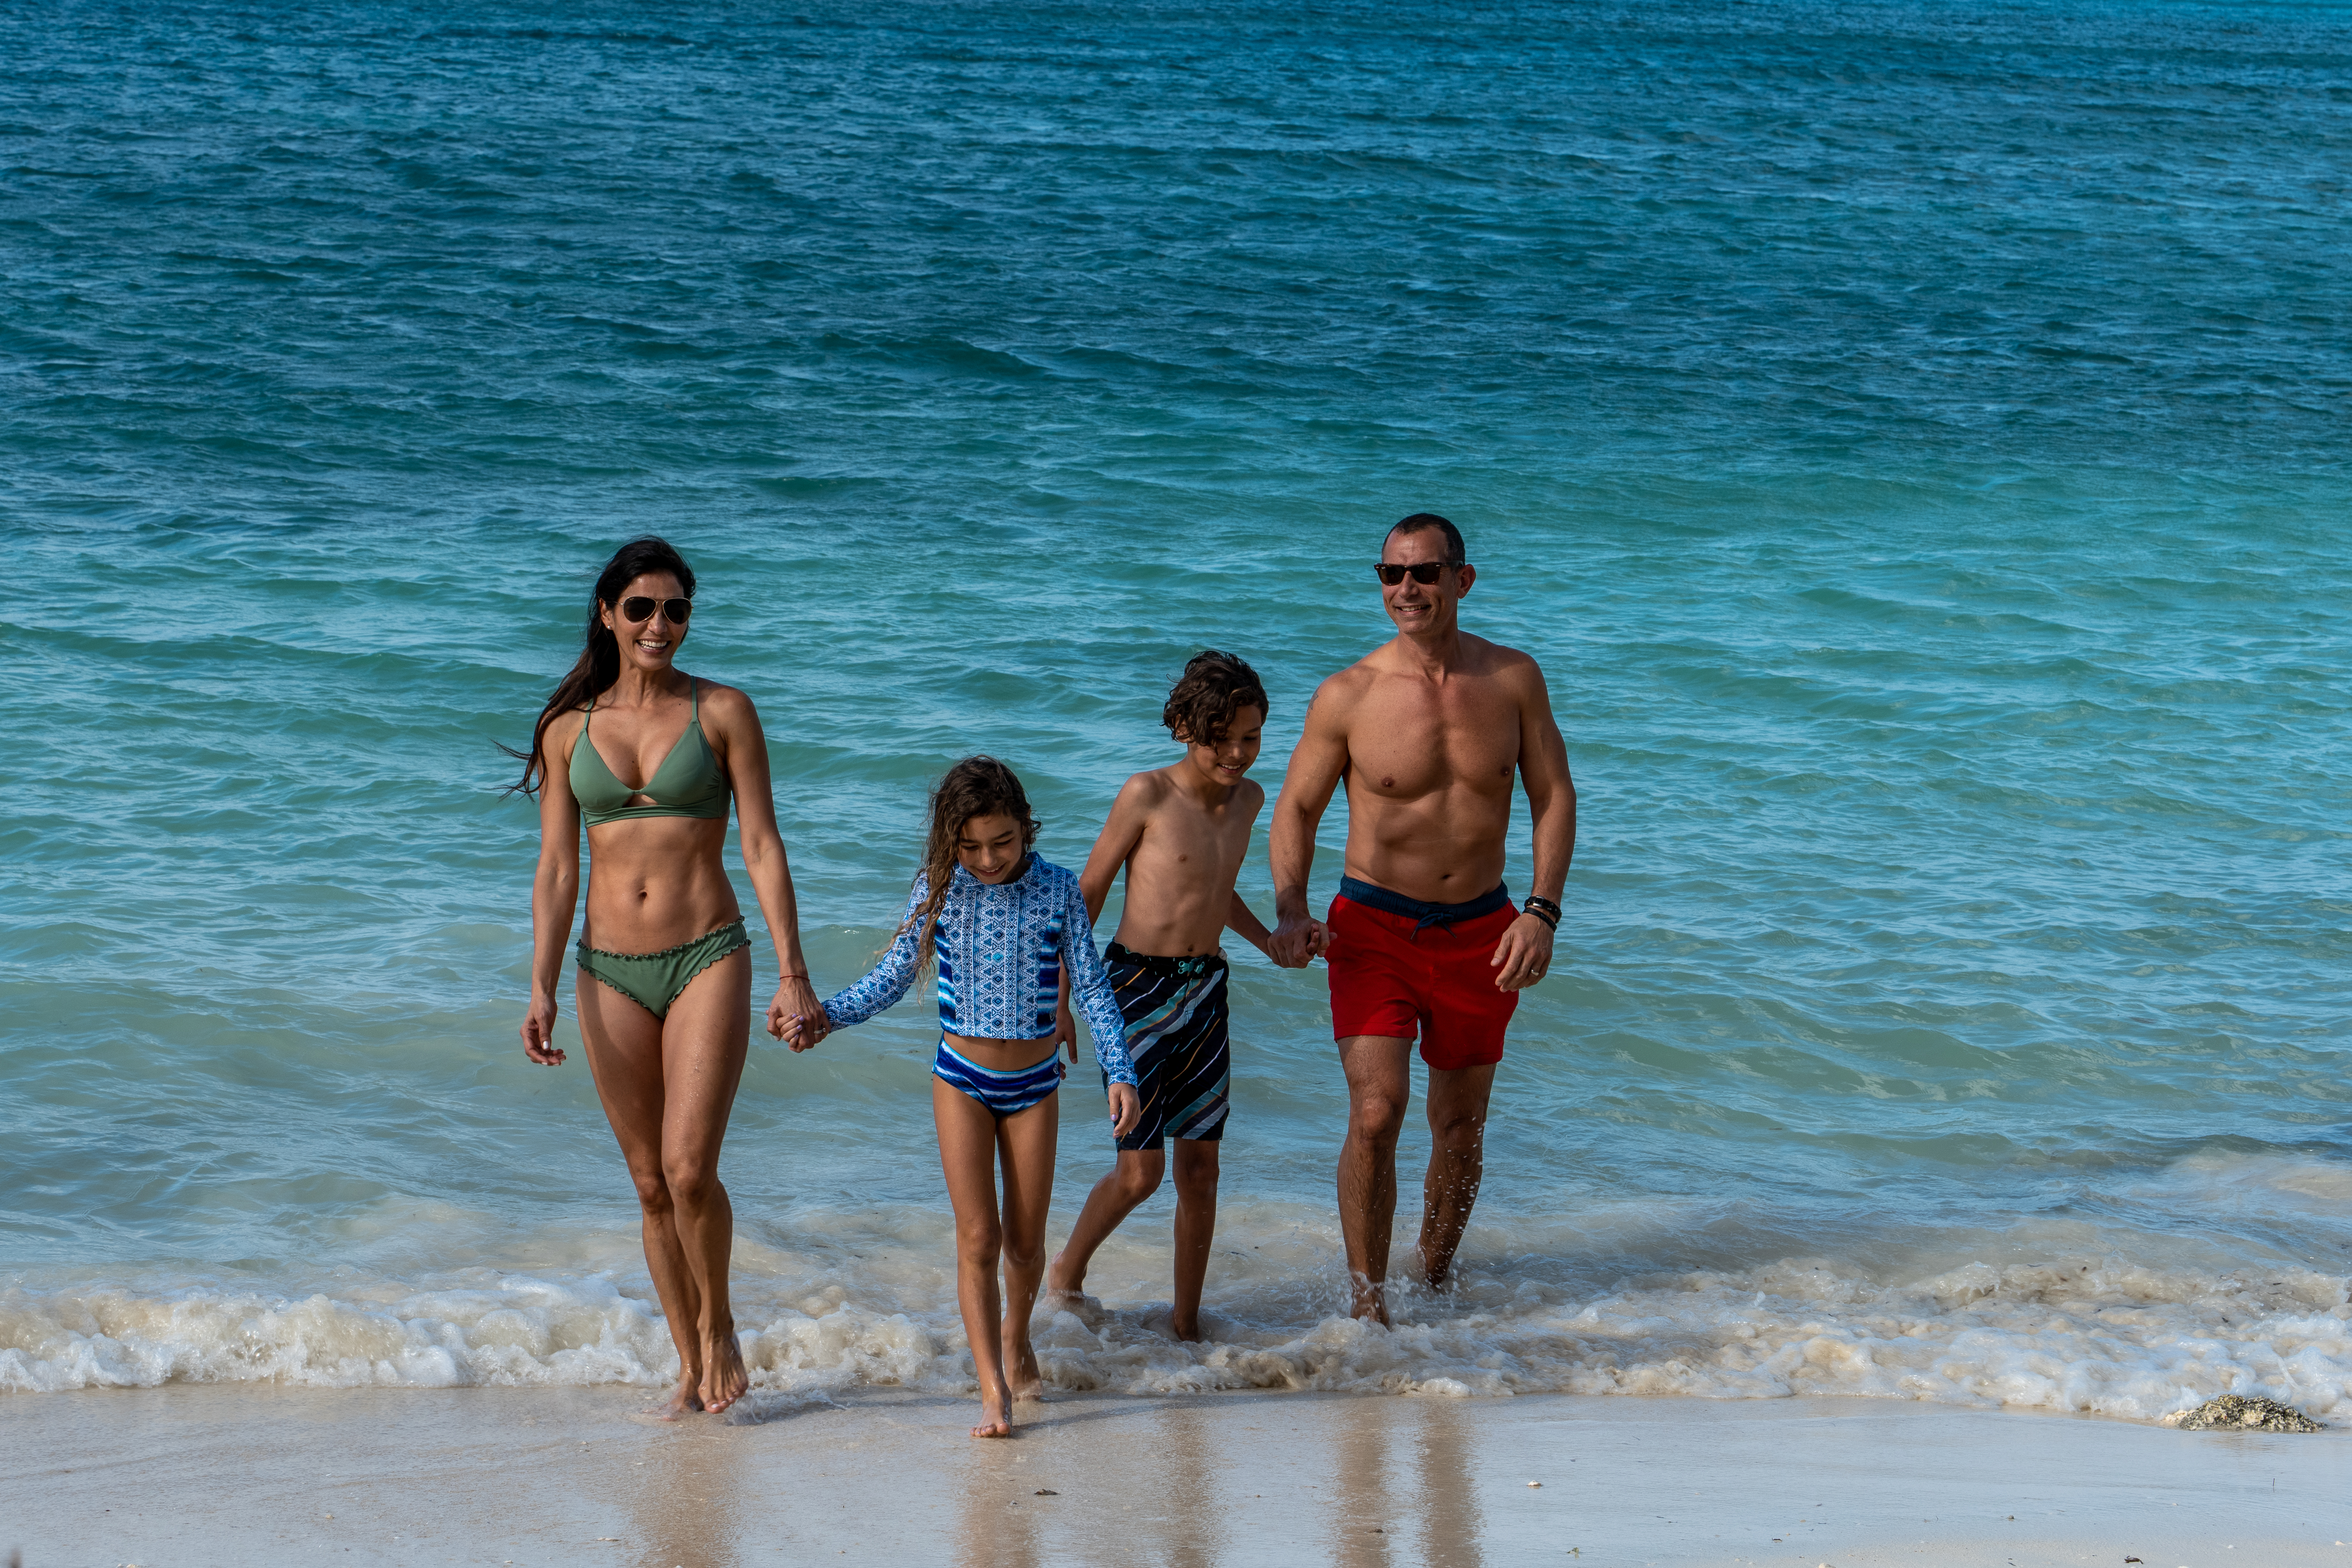 Family On A Beach